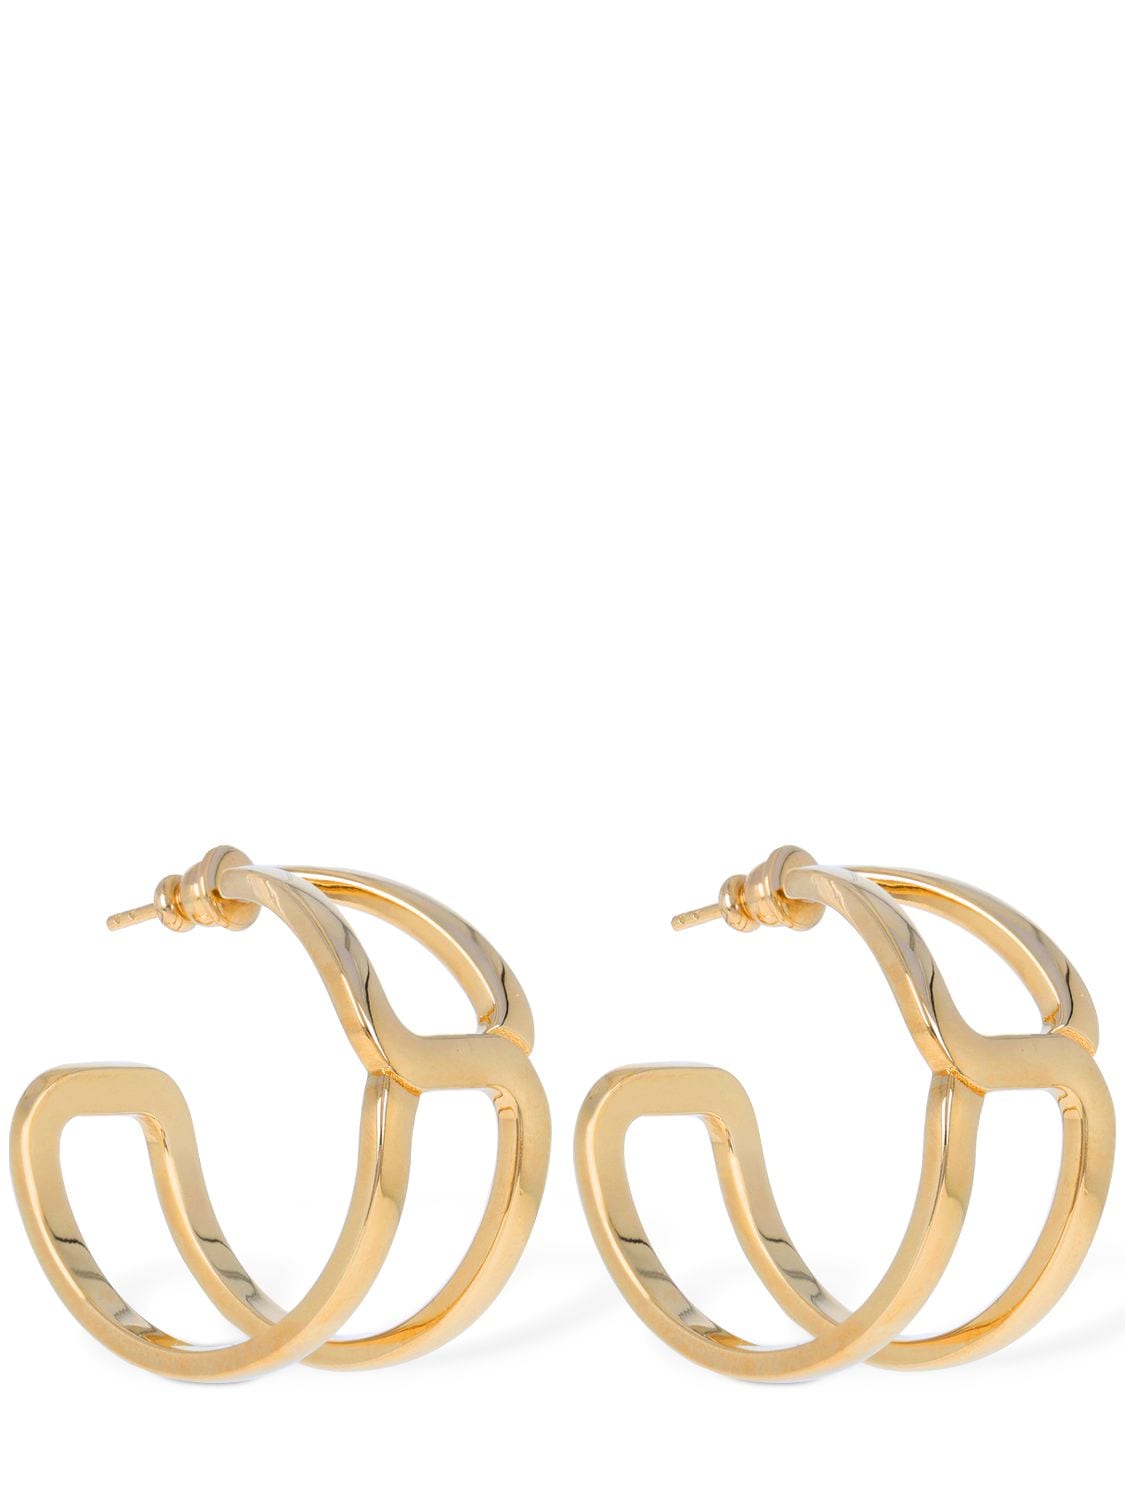 Chloé Marcie Earrings In Gold